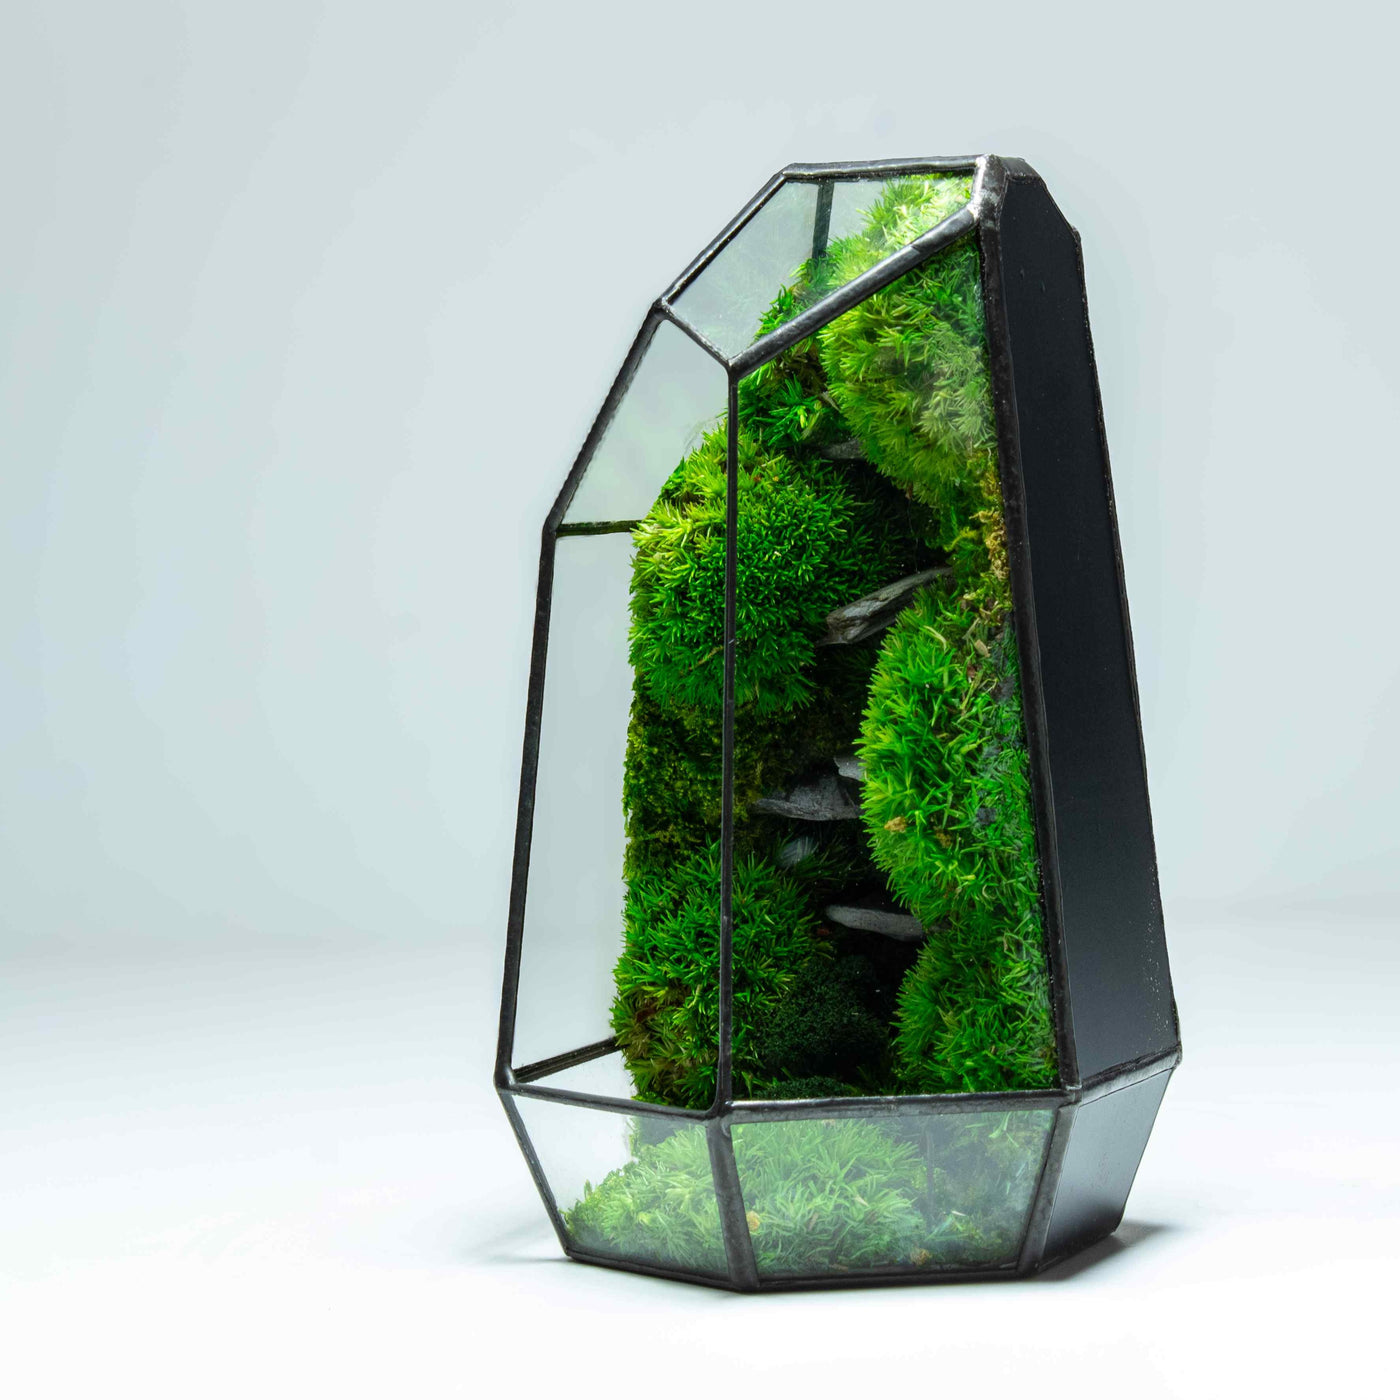 Luscious green terrarium: Zero maintenance, geometric glassware design.